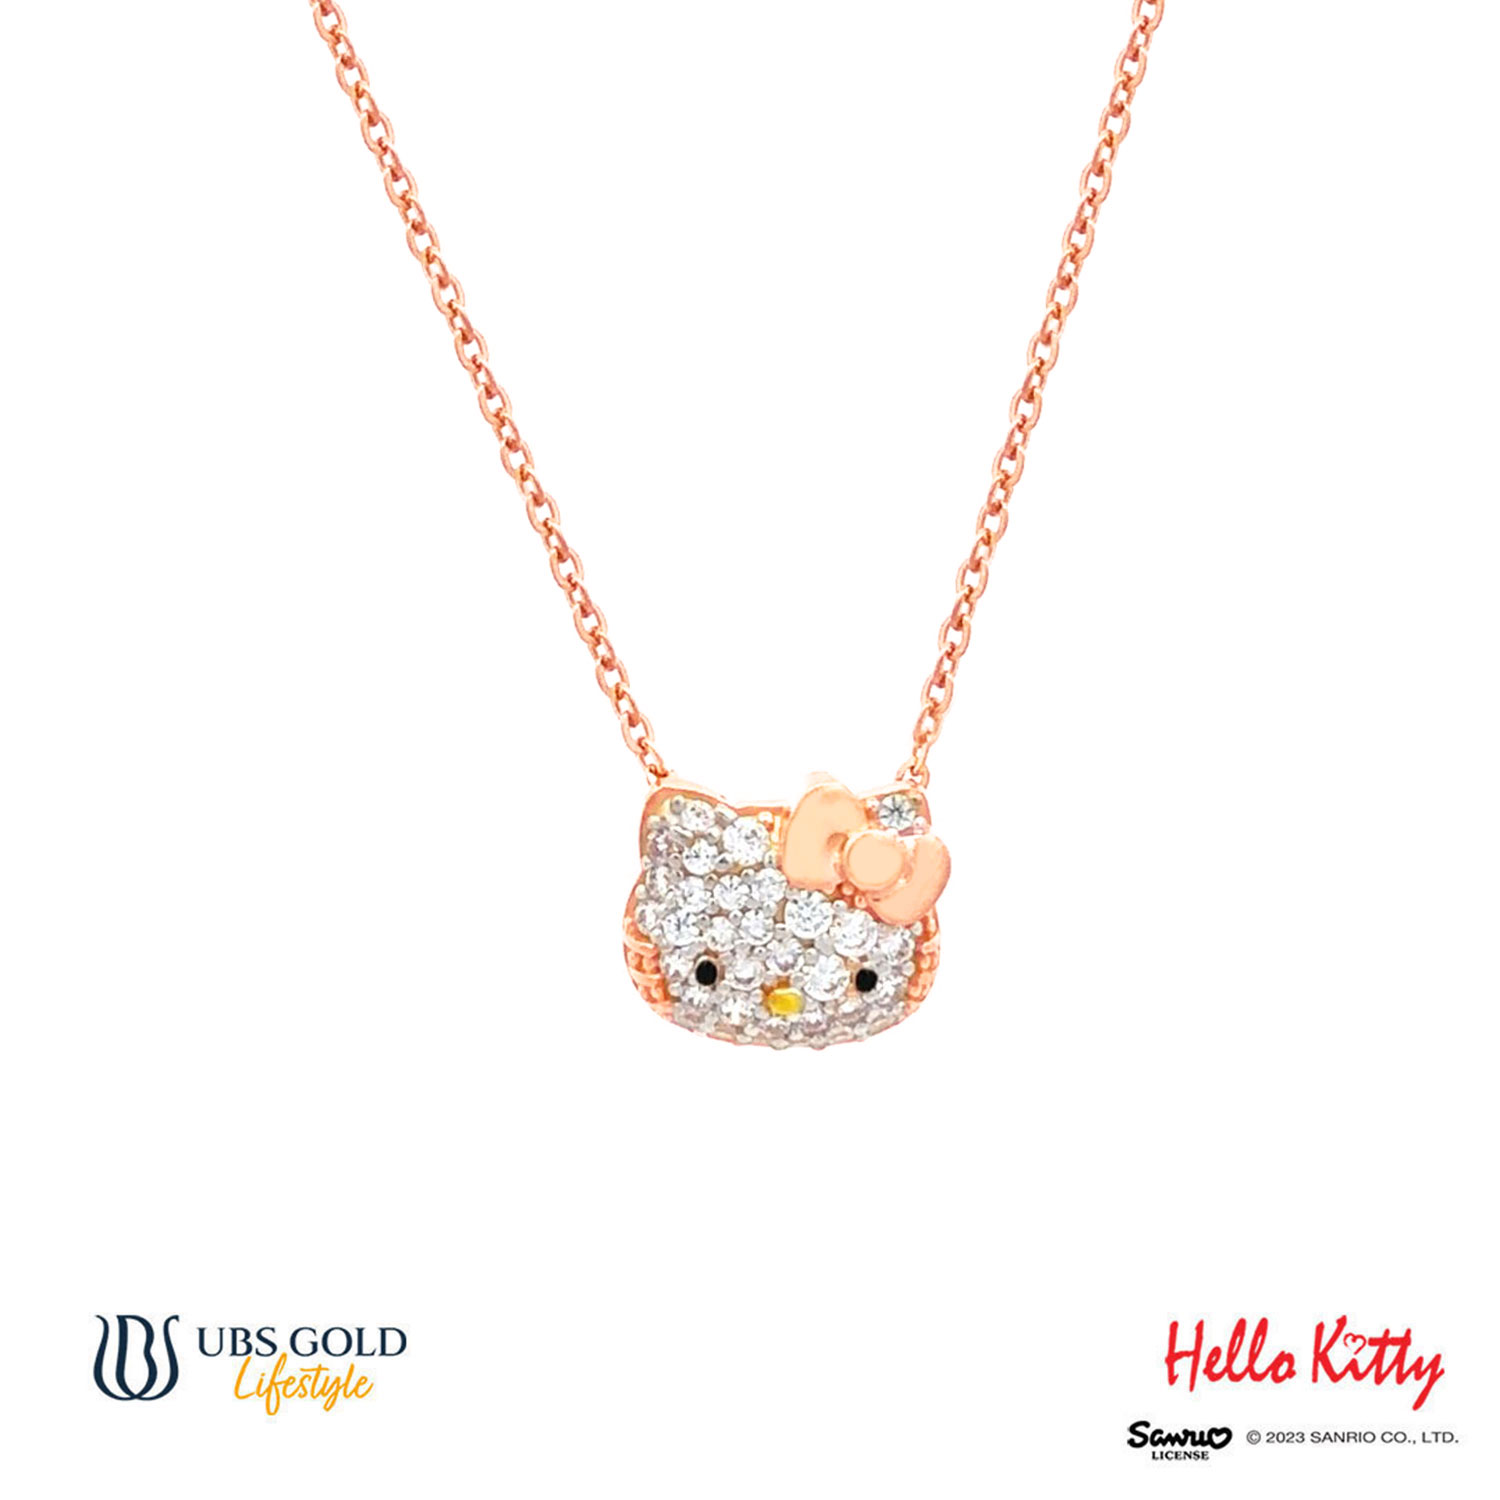 UBS Kalung Emas Sanrio Hello Kitty - Kkz0121 - 17K